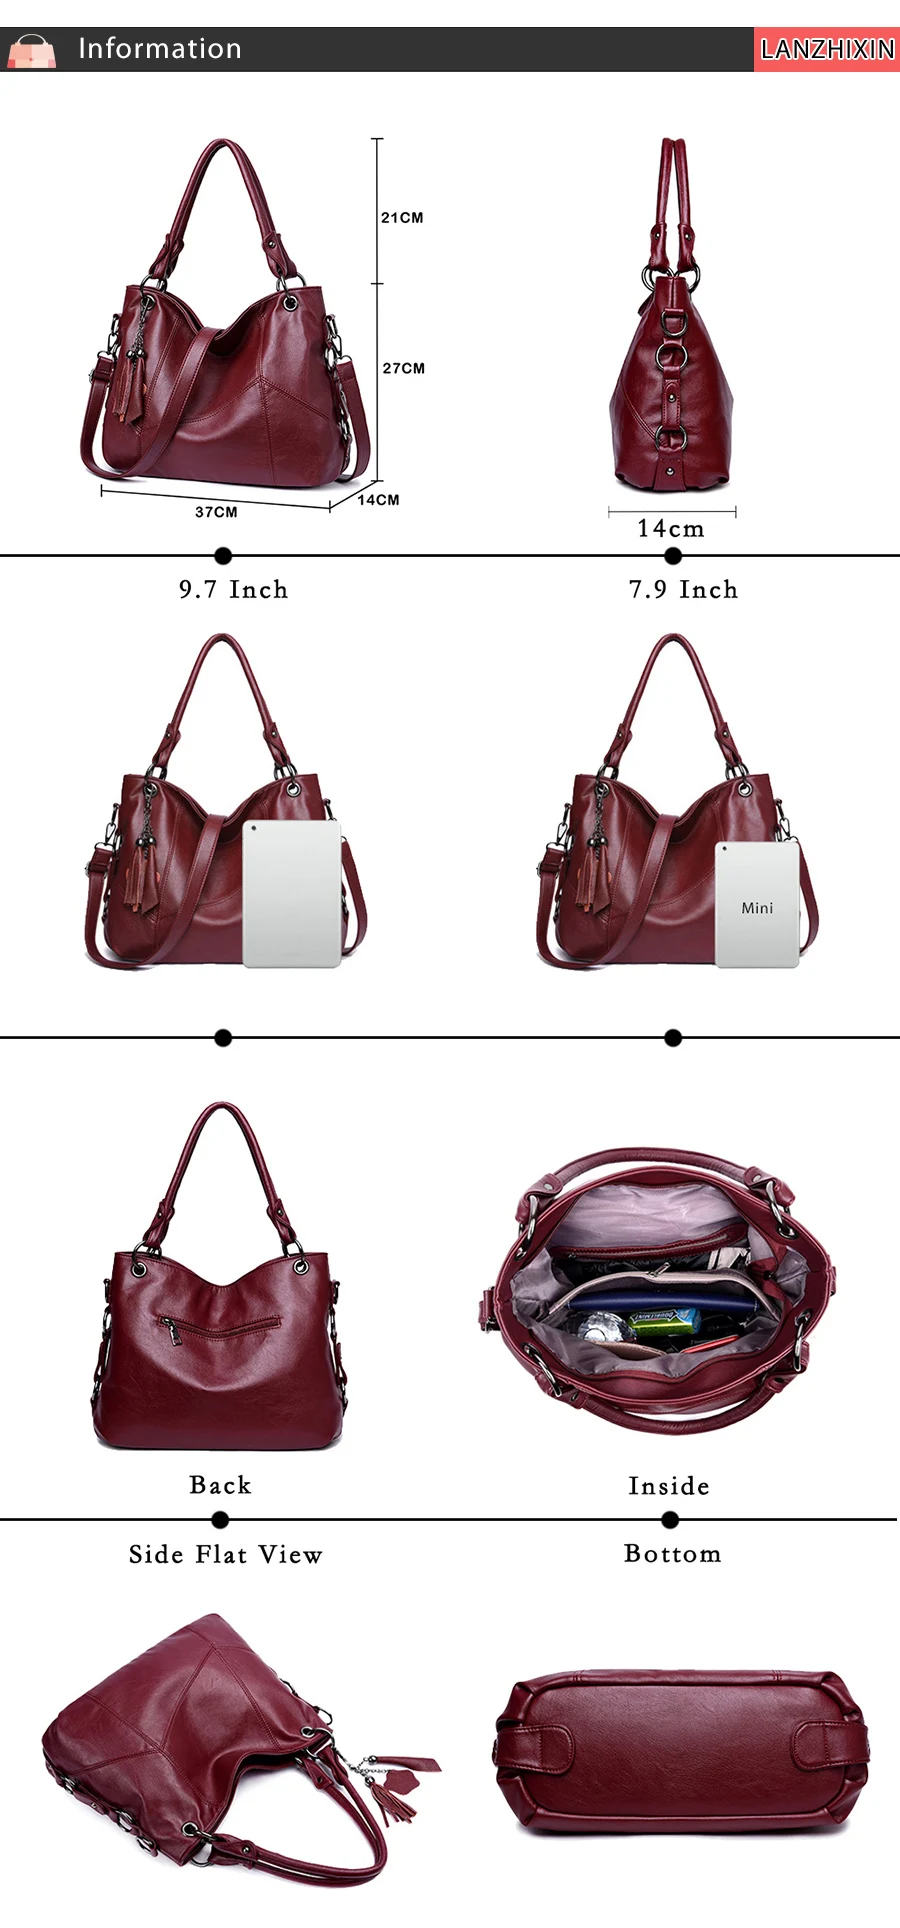 Lanzhixin женские кожаные сумки для женщин Роскошные сумки женские сумки дизайнерские сумки с верхней ручкой сумки через плечо Bolsas 819S